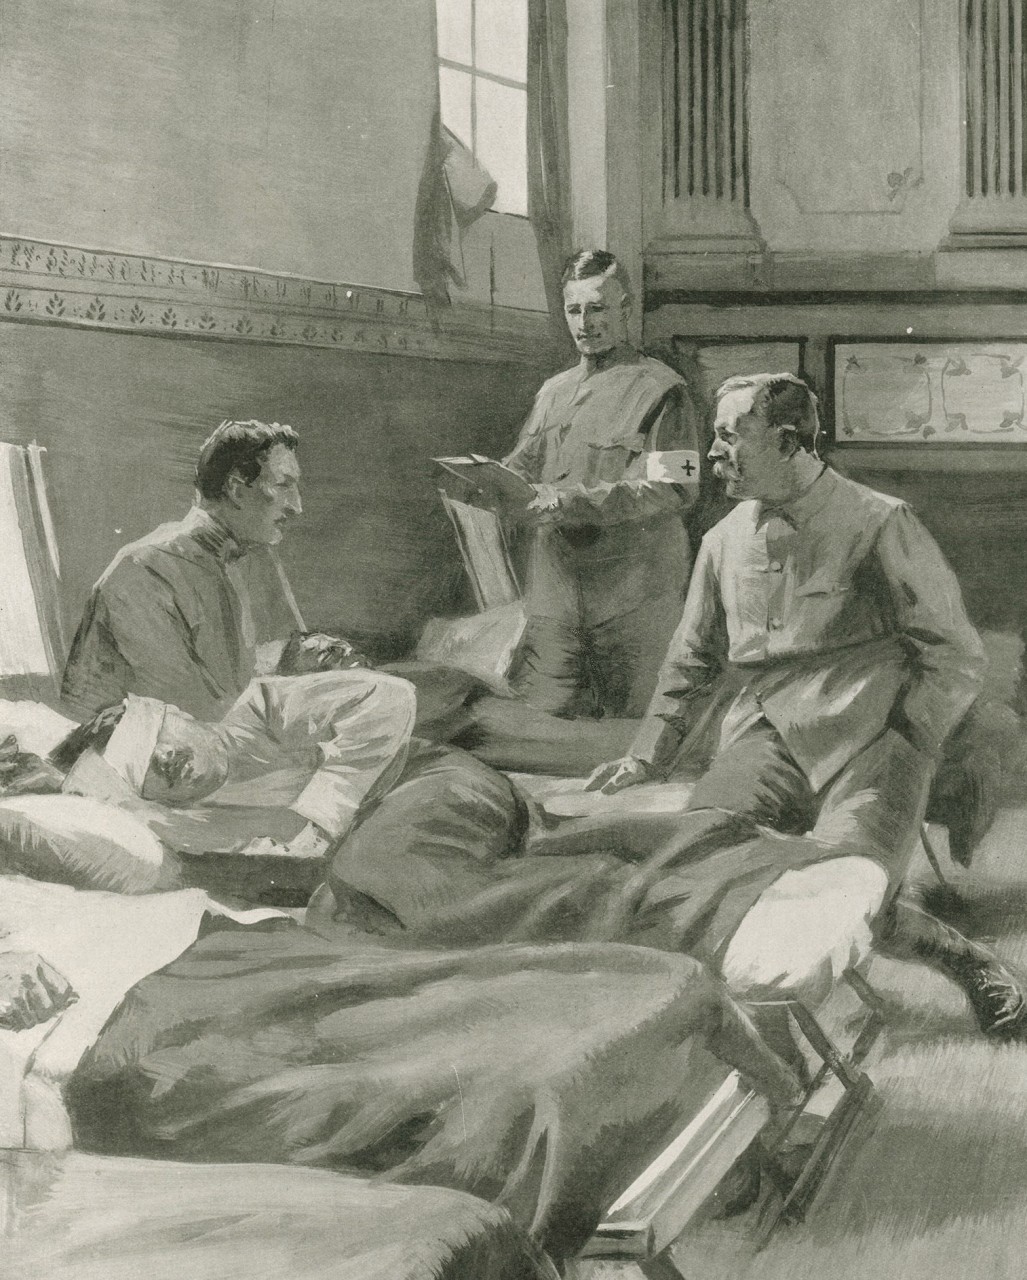 Сэр Артур Конан Дойл в полевом госпитале во время Англо-бурской войны. работа не ранее 1899 года